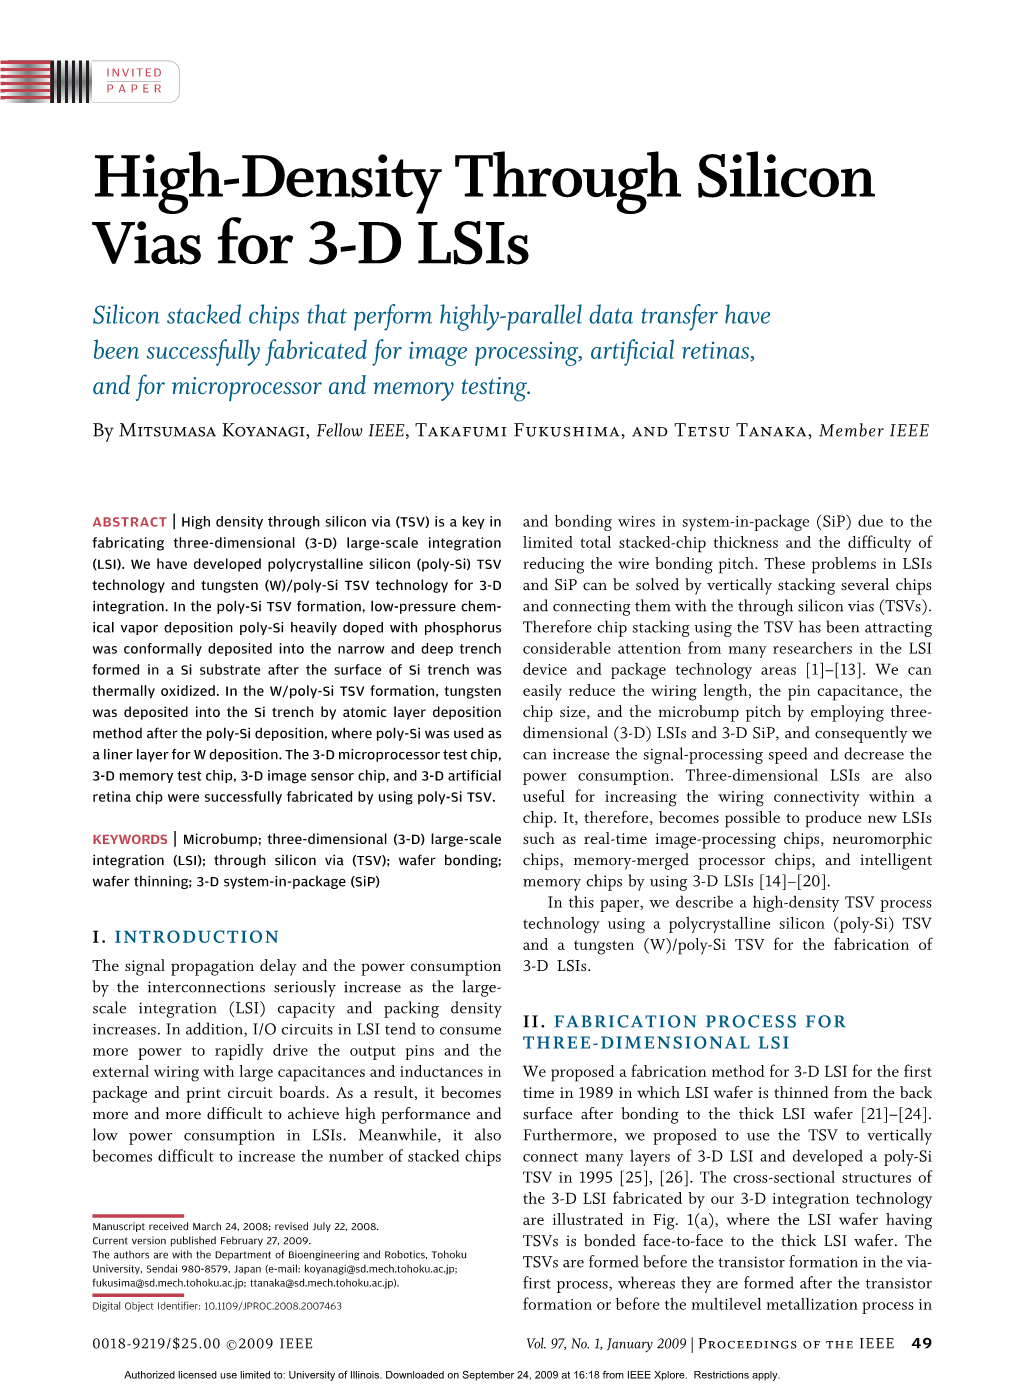 High-Density Through Silicon Vias for 3-D Lsis